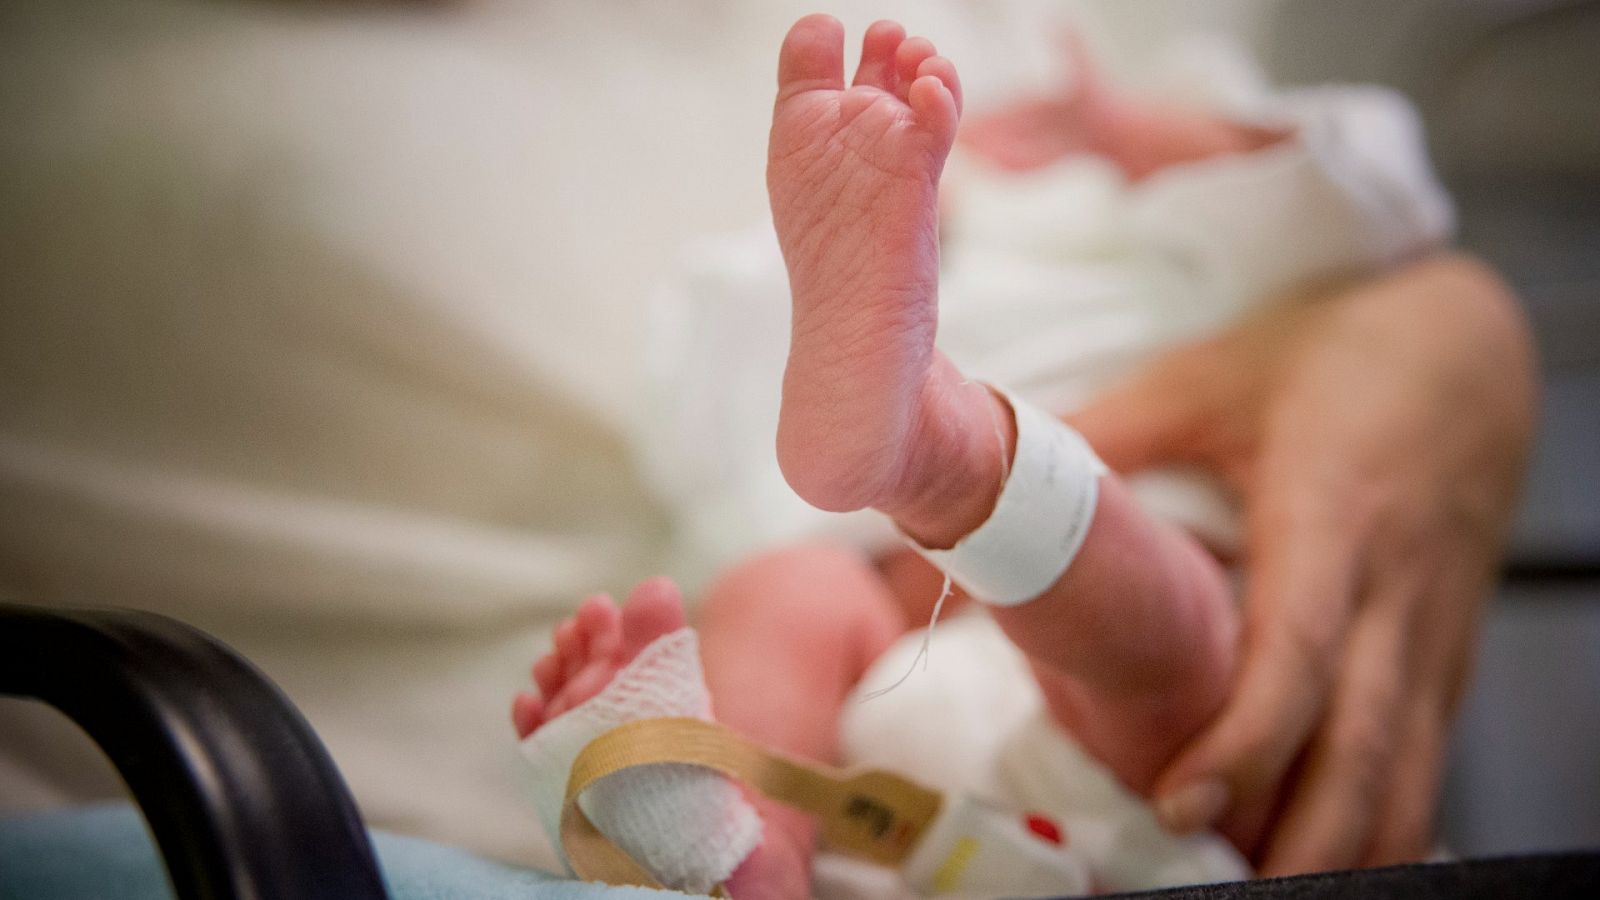 El pie de un bebé recién nacido con la etiqueta identificativa del hospital